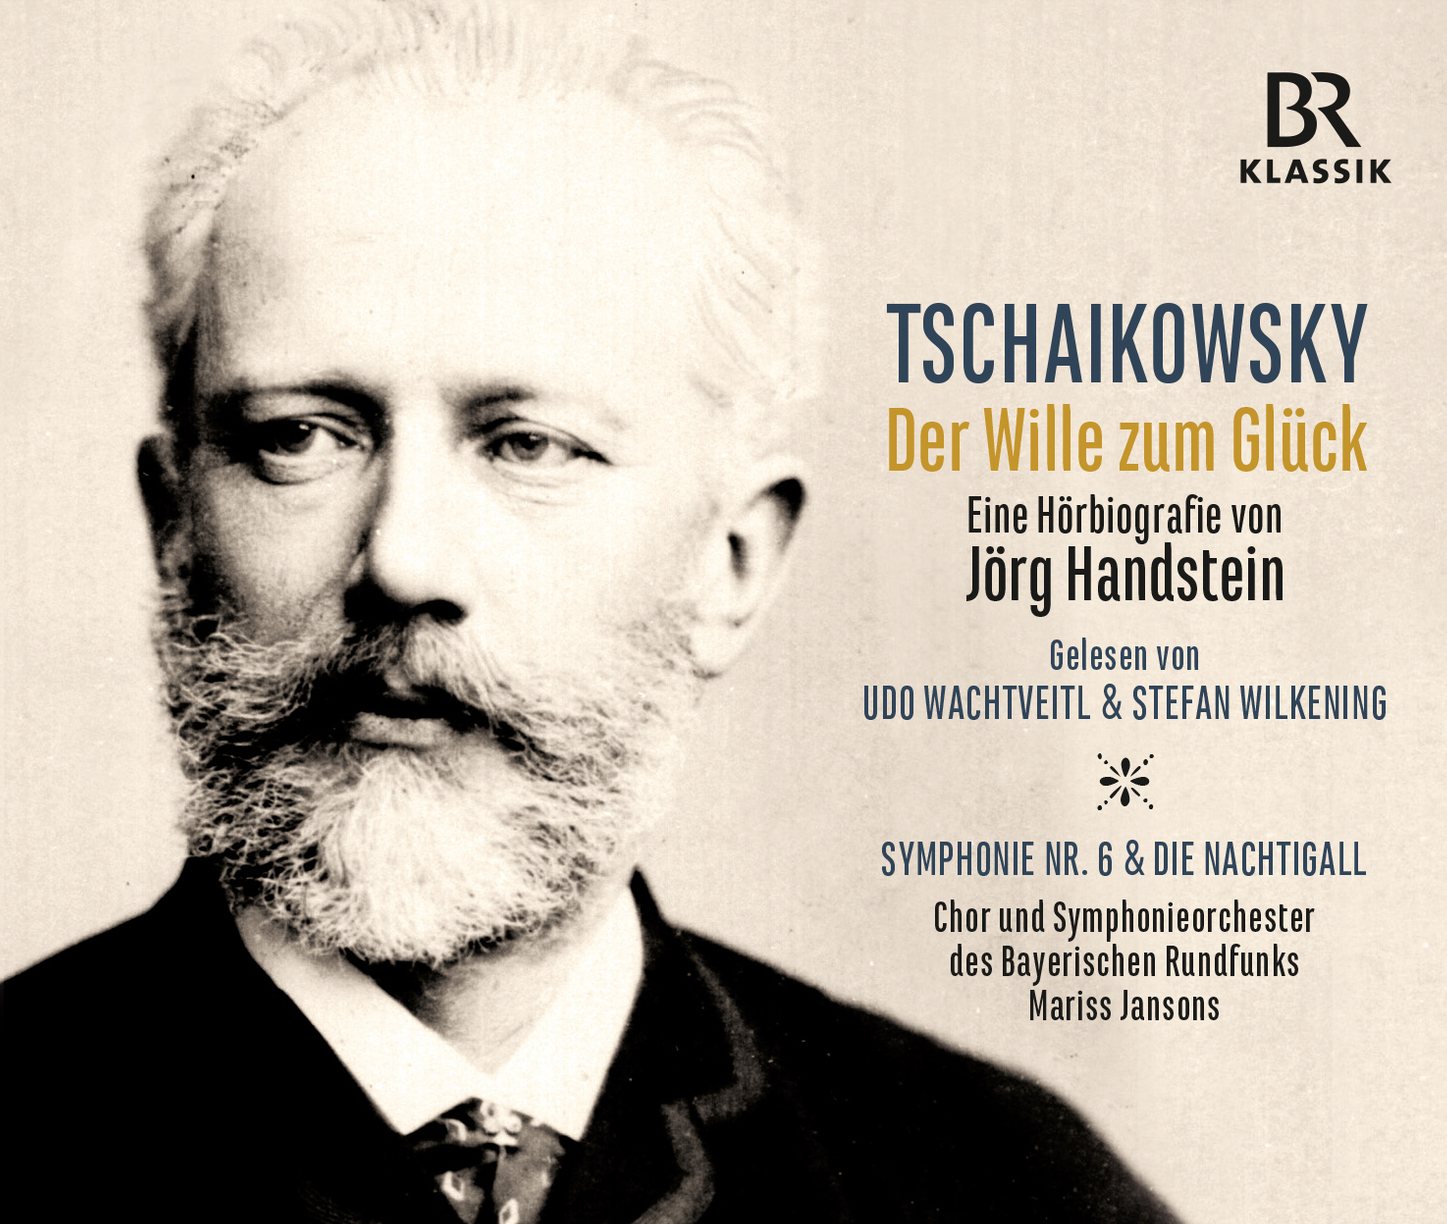 Tschaikowsky, Der Wille zum Glück, Hörbiografie, Jörg Handstein, Udo Wachtveitl, Wachtveitl, BR-Klassik, CD-Box, Hörbuch